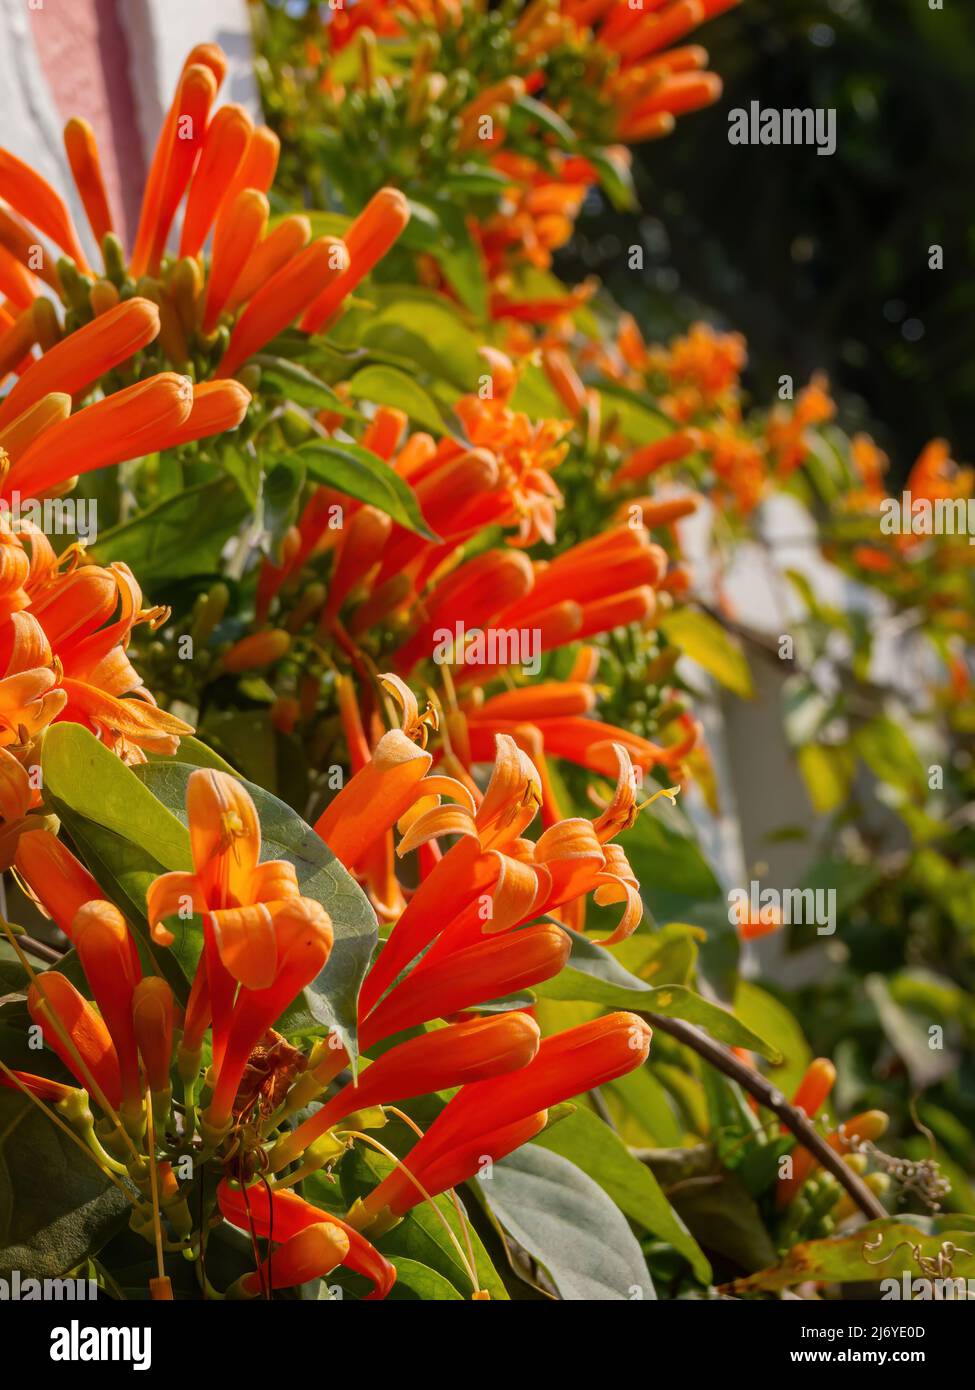 Close up shot of Campsis radicans blossom at Macau, China Stock Photo